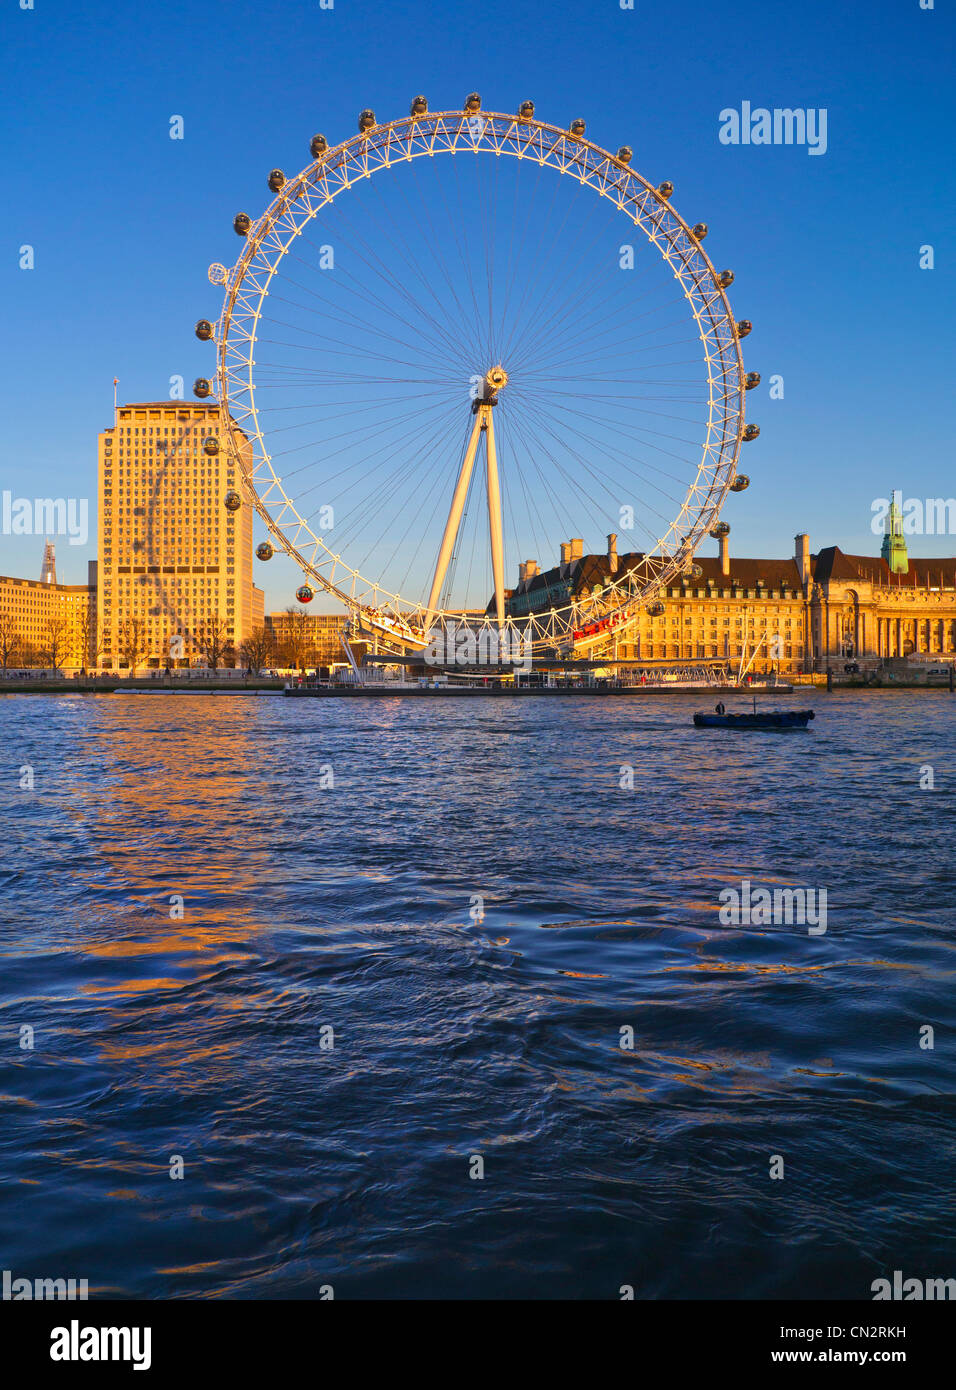 Das London Eye, Marriott County Hall und Shell HQ vom Westminster Pier Victoria Embankment bei Sonnenuntergang Westminster London England Großbritannien Stockfoto